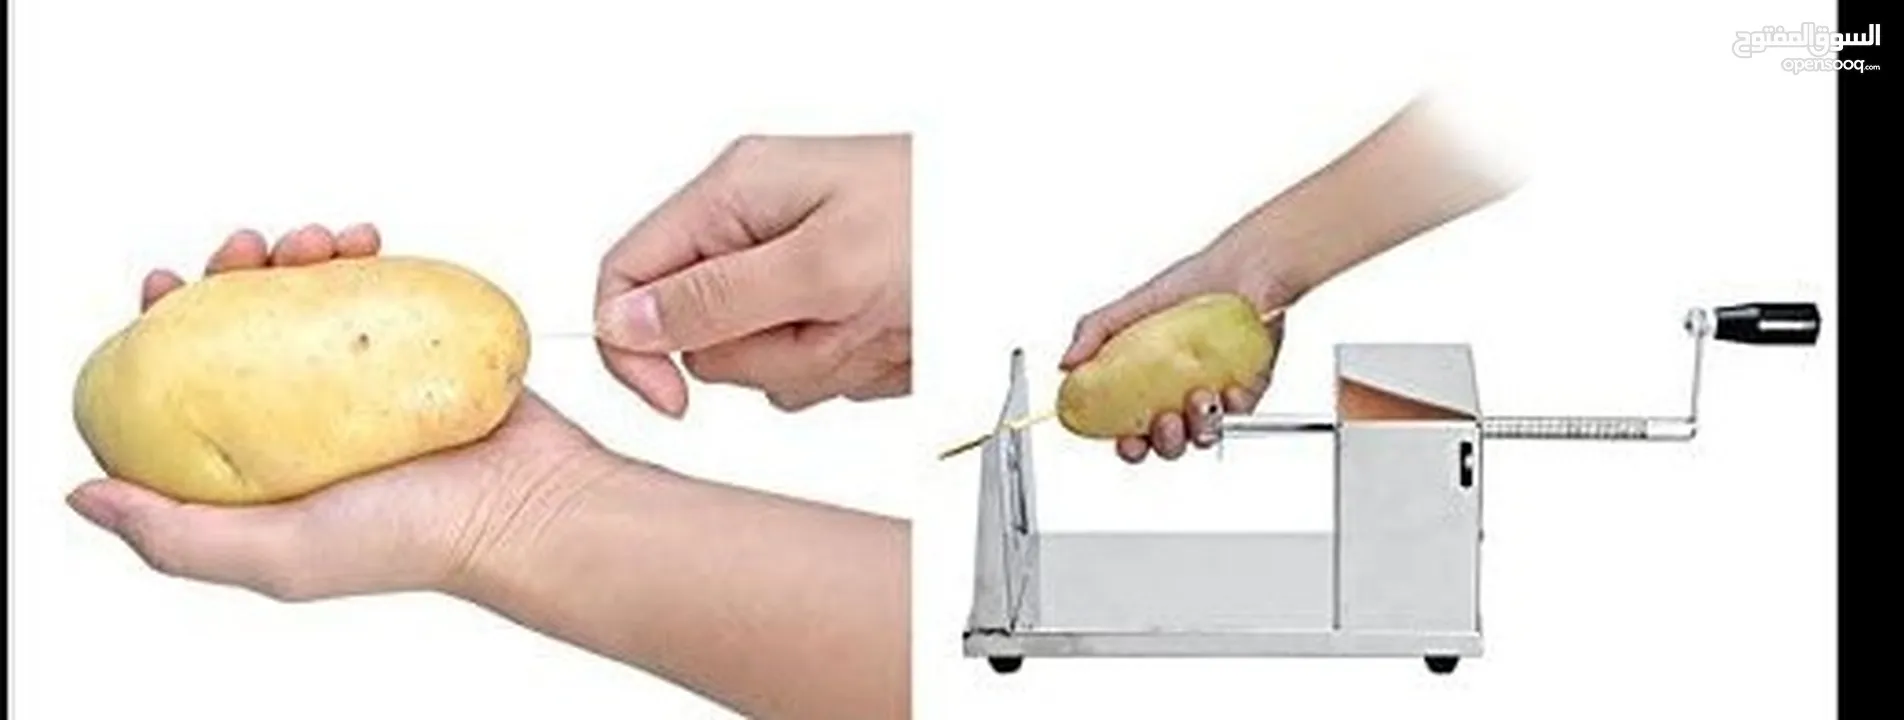 الة تقطيع البطاطس على شكل حلزوني تستخدم في المطاعم والمنازل